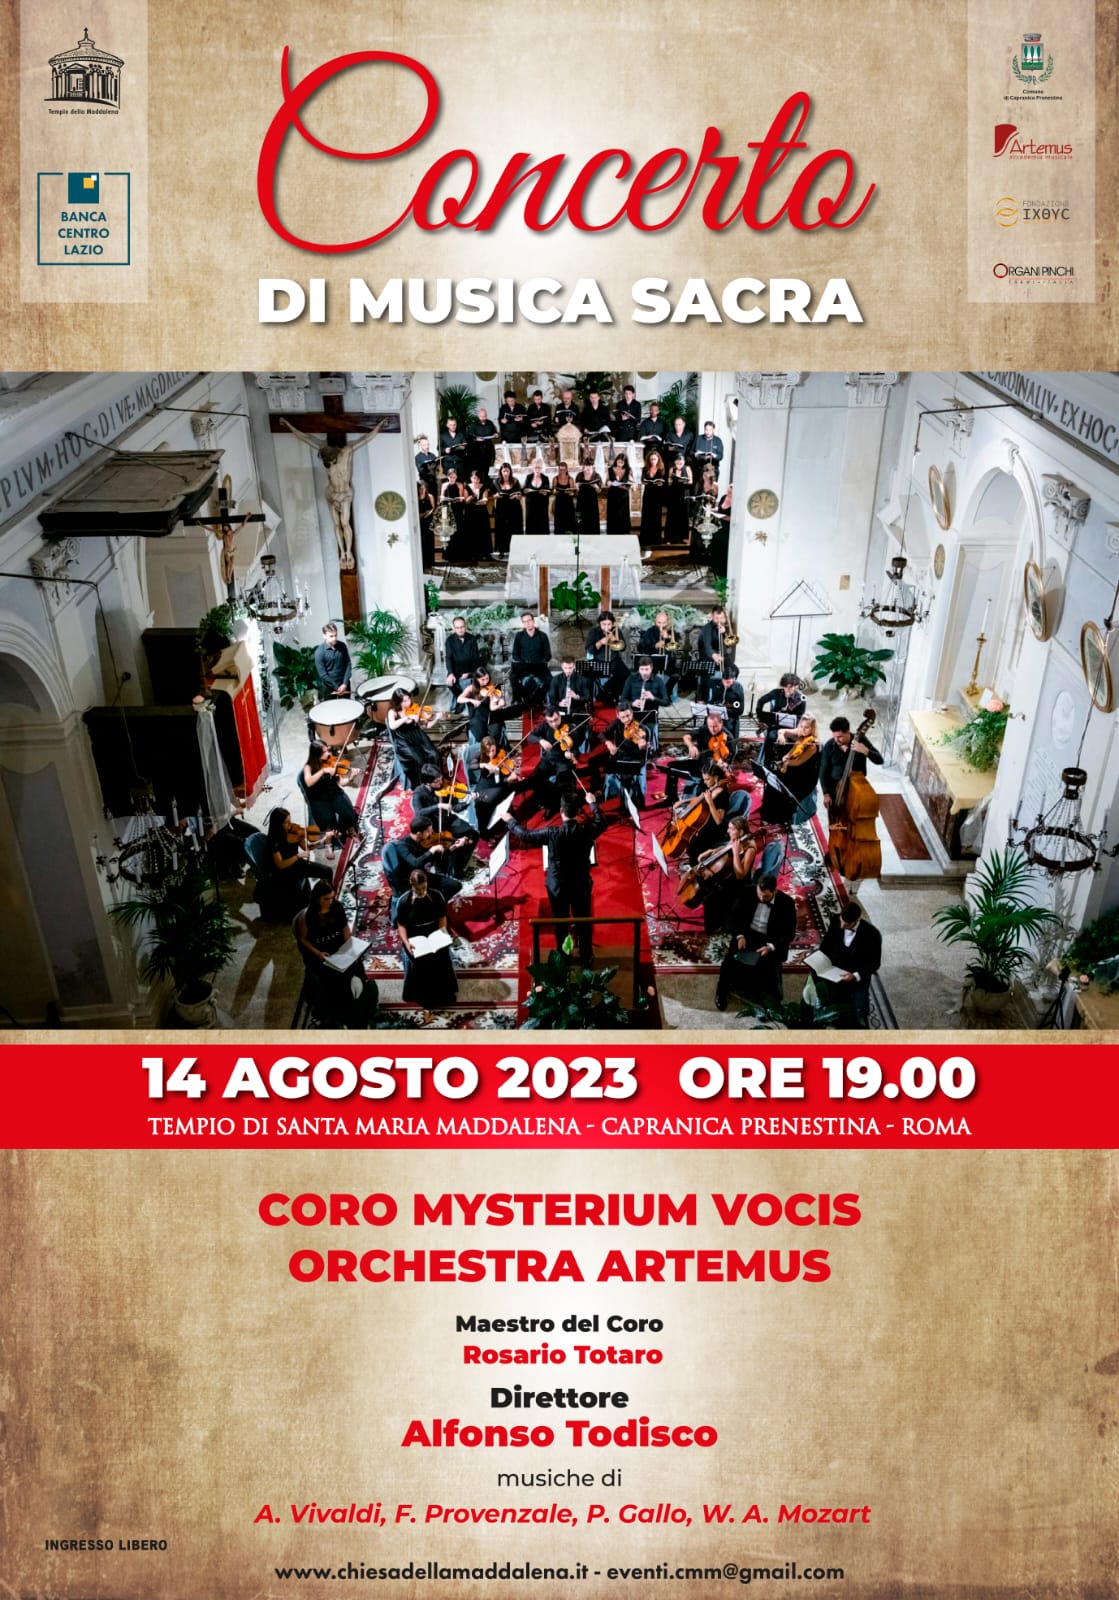 Concerto di musica sacra 14 agosto 2023